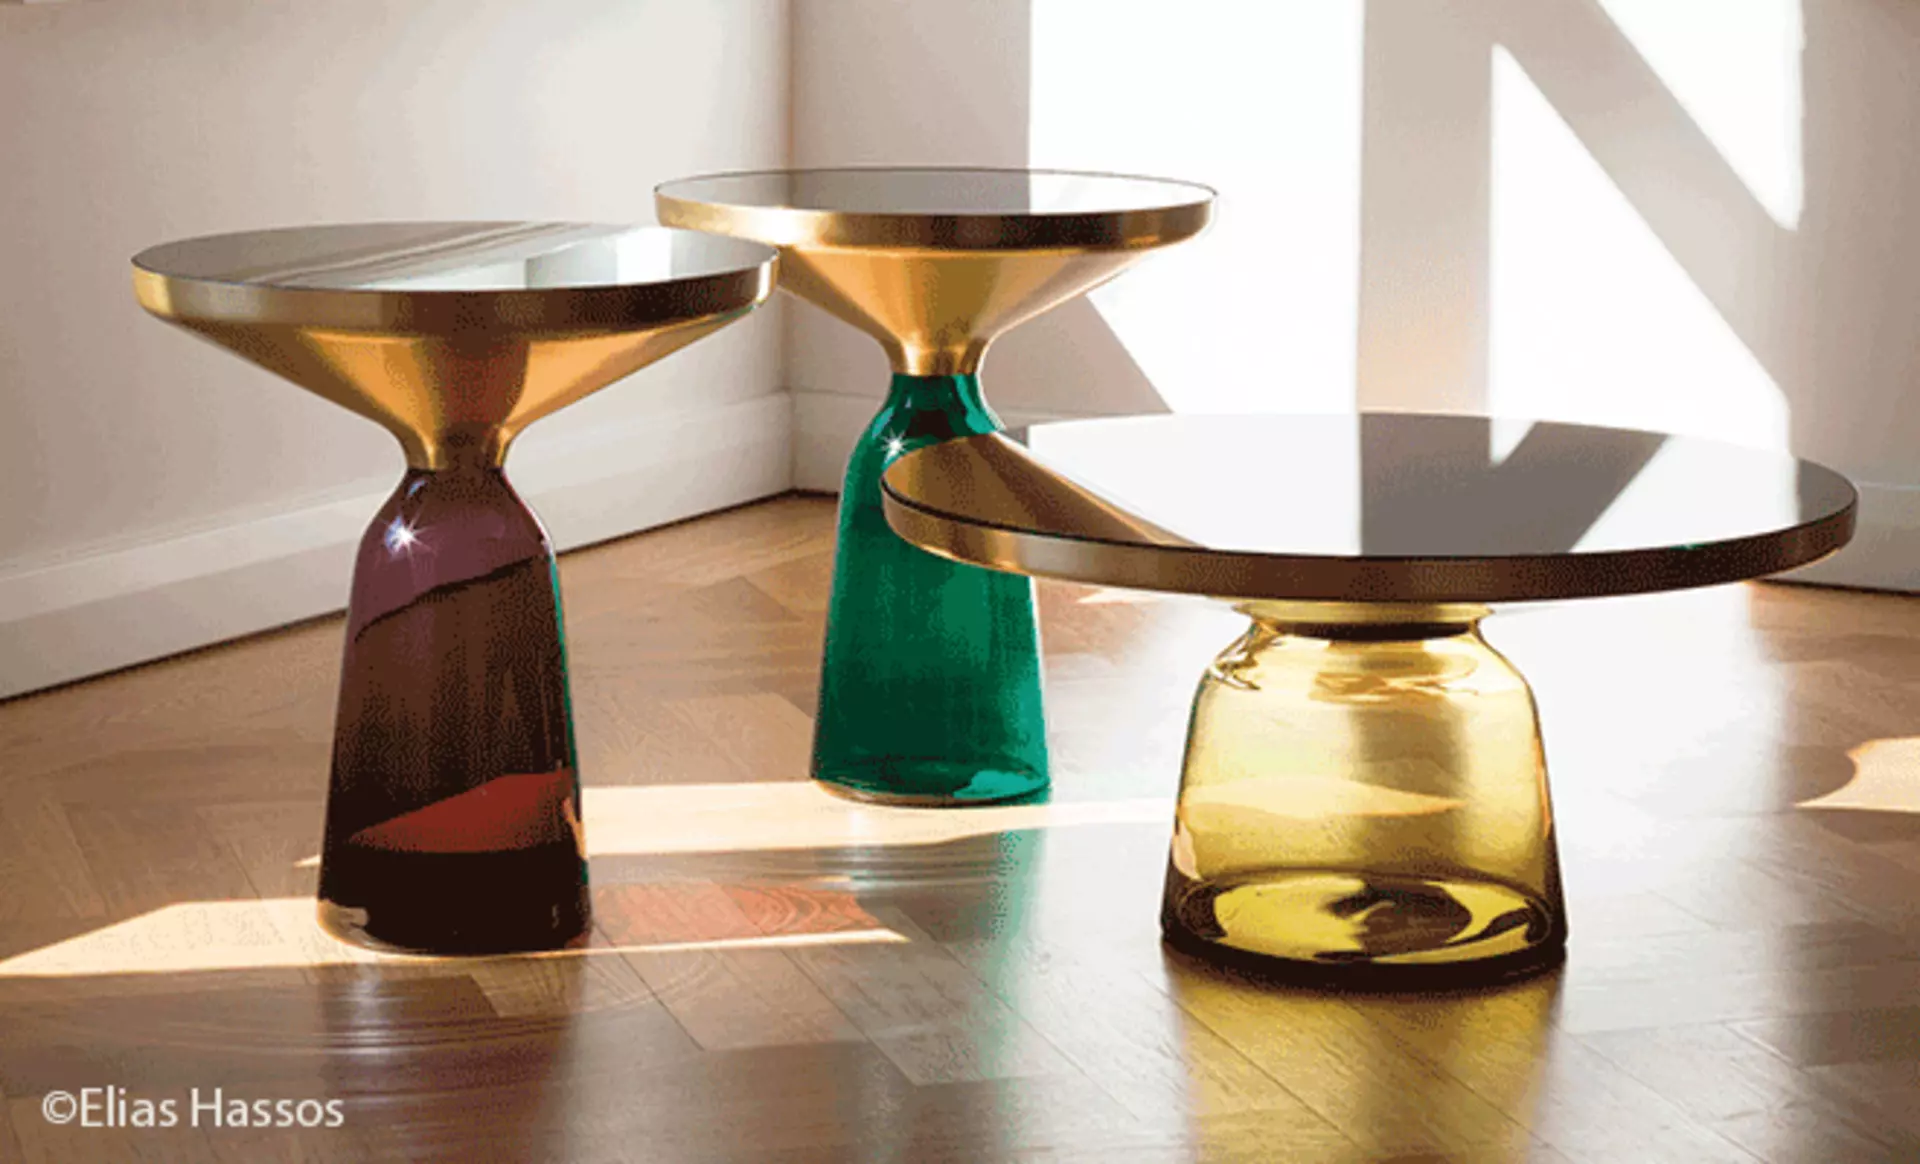 Die ikonischen Bell Couchtische in verschiedenen Größen und Farbkompositionen